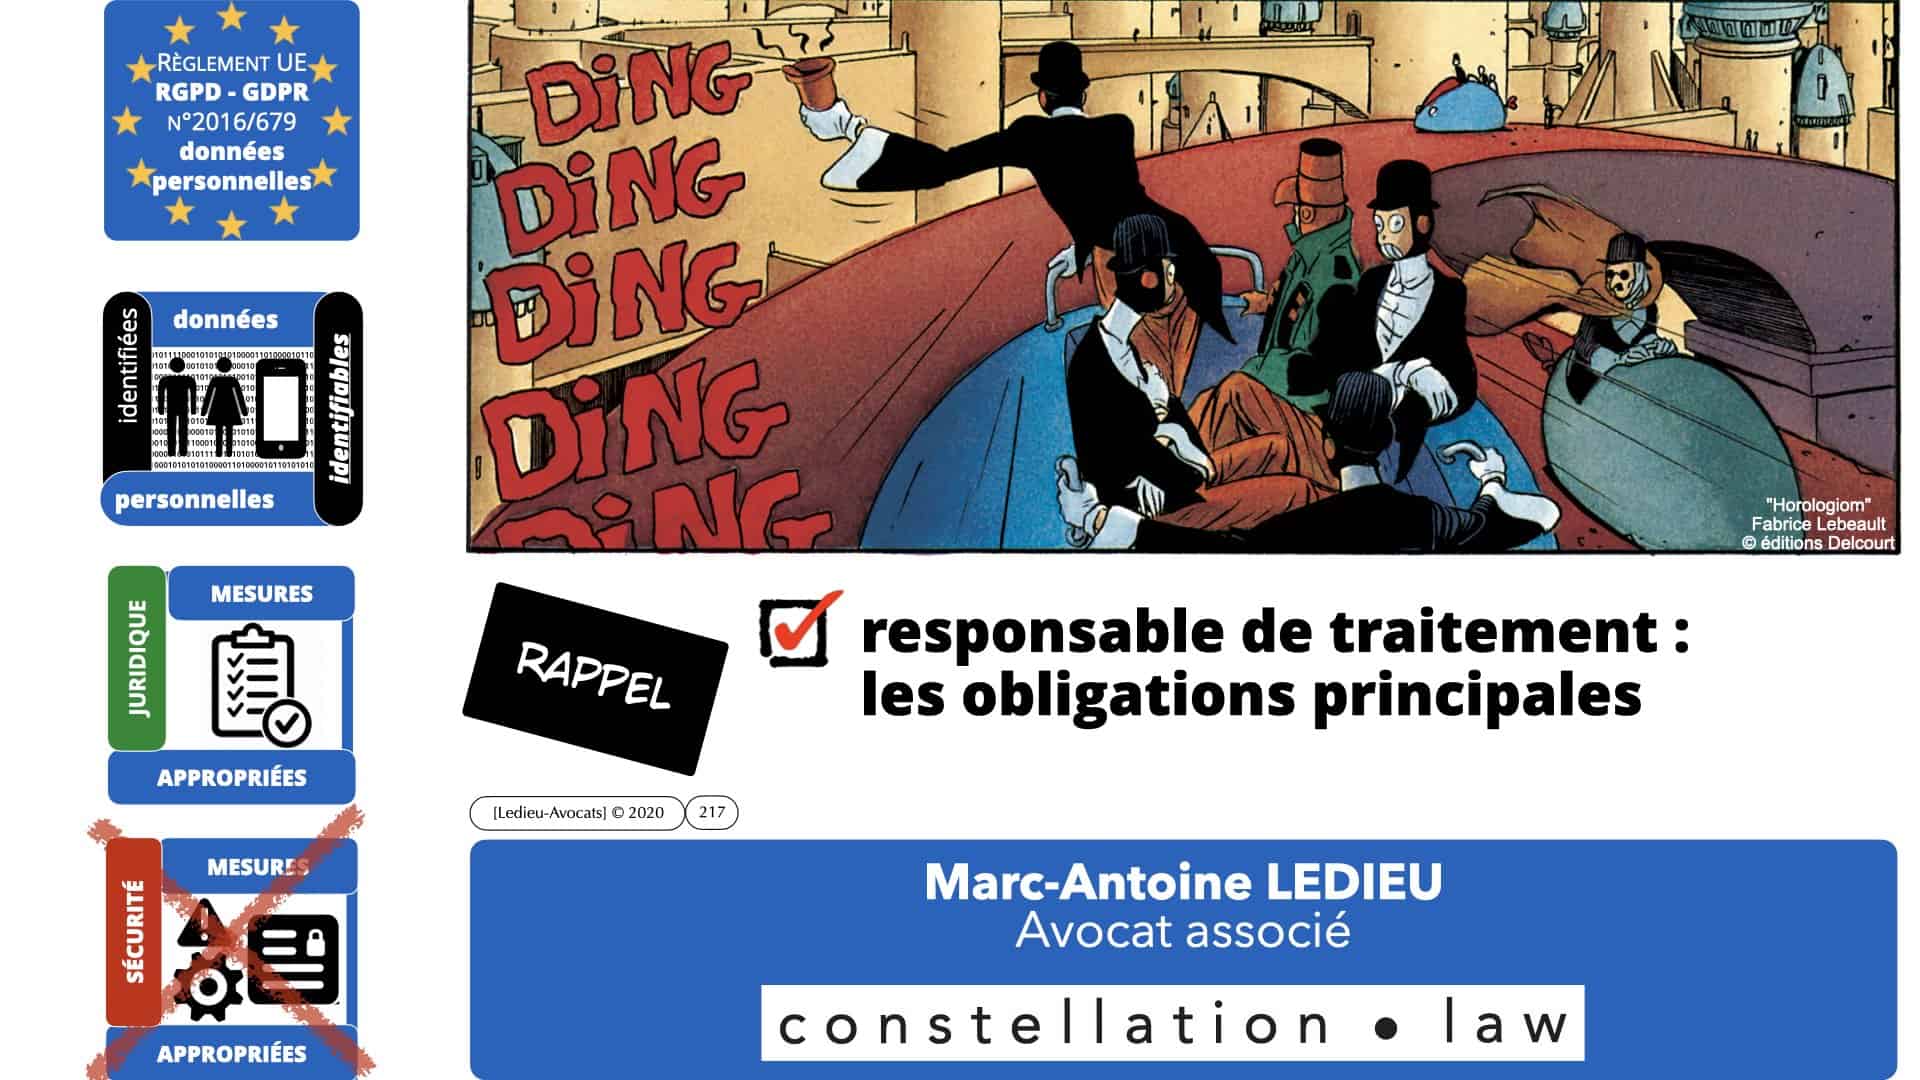 RGPD e-Privacy données personnelles jurisprudence formation Lamy Les Echos 10-02-2021 ©Ledieu-Avocats.217